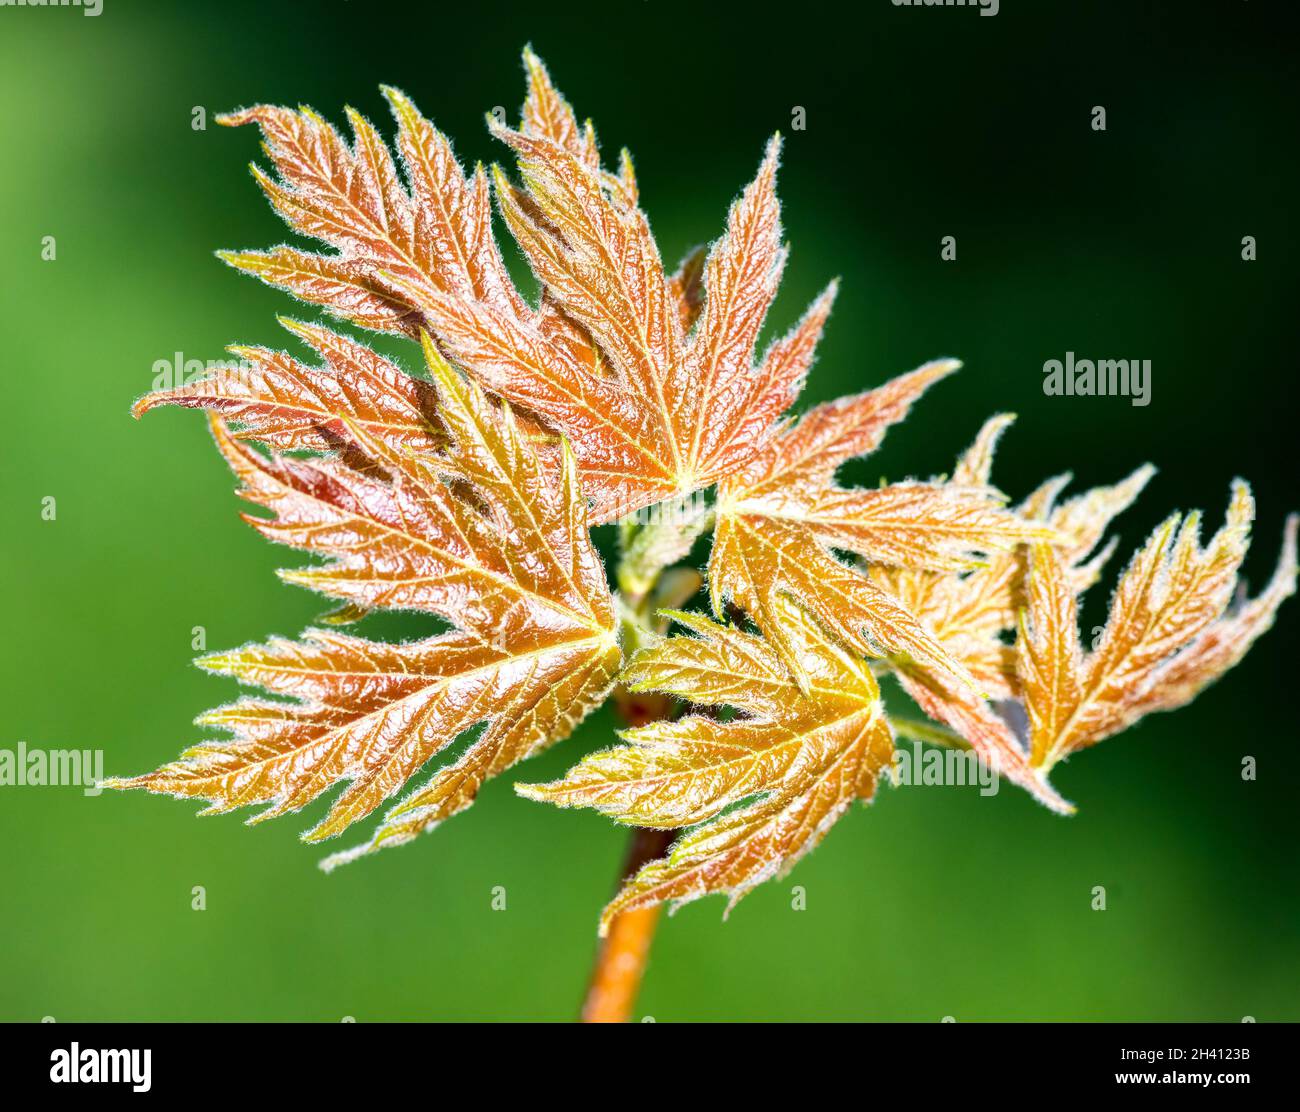 L'albero d'acero dorato lascia fiorire indicando l'inizio della stagione primaverile. Foto Stock